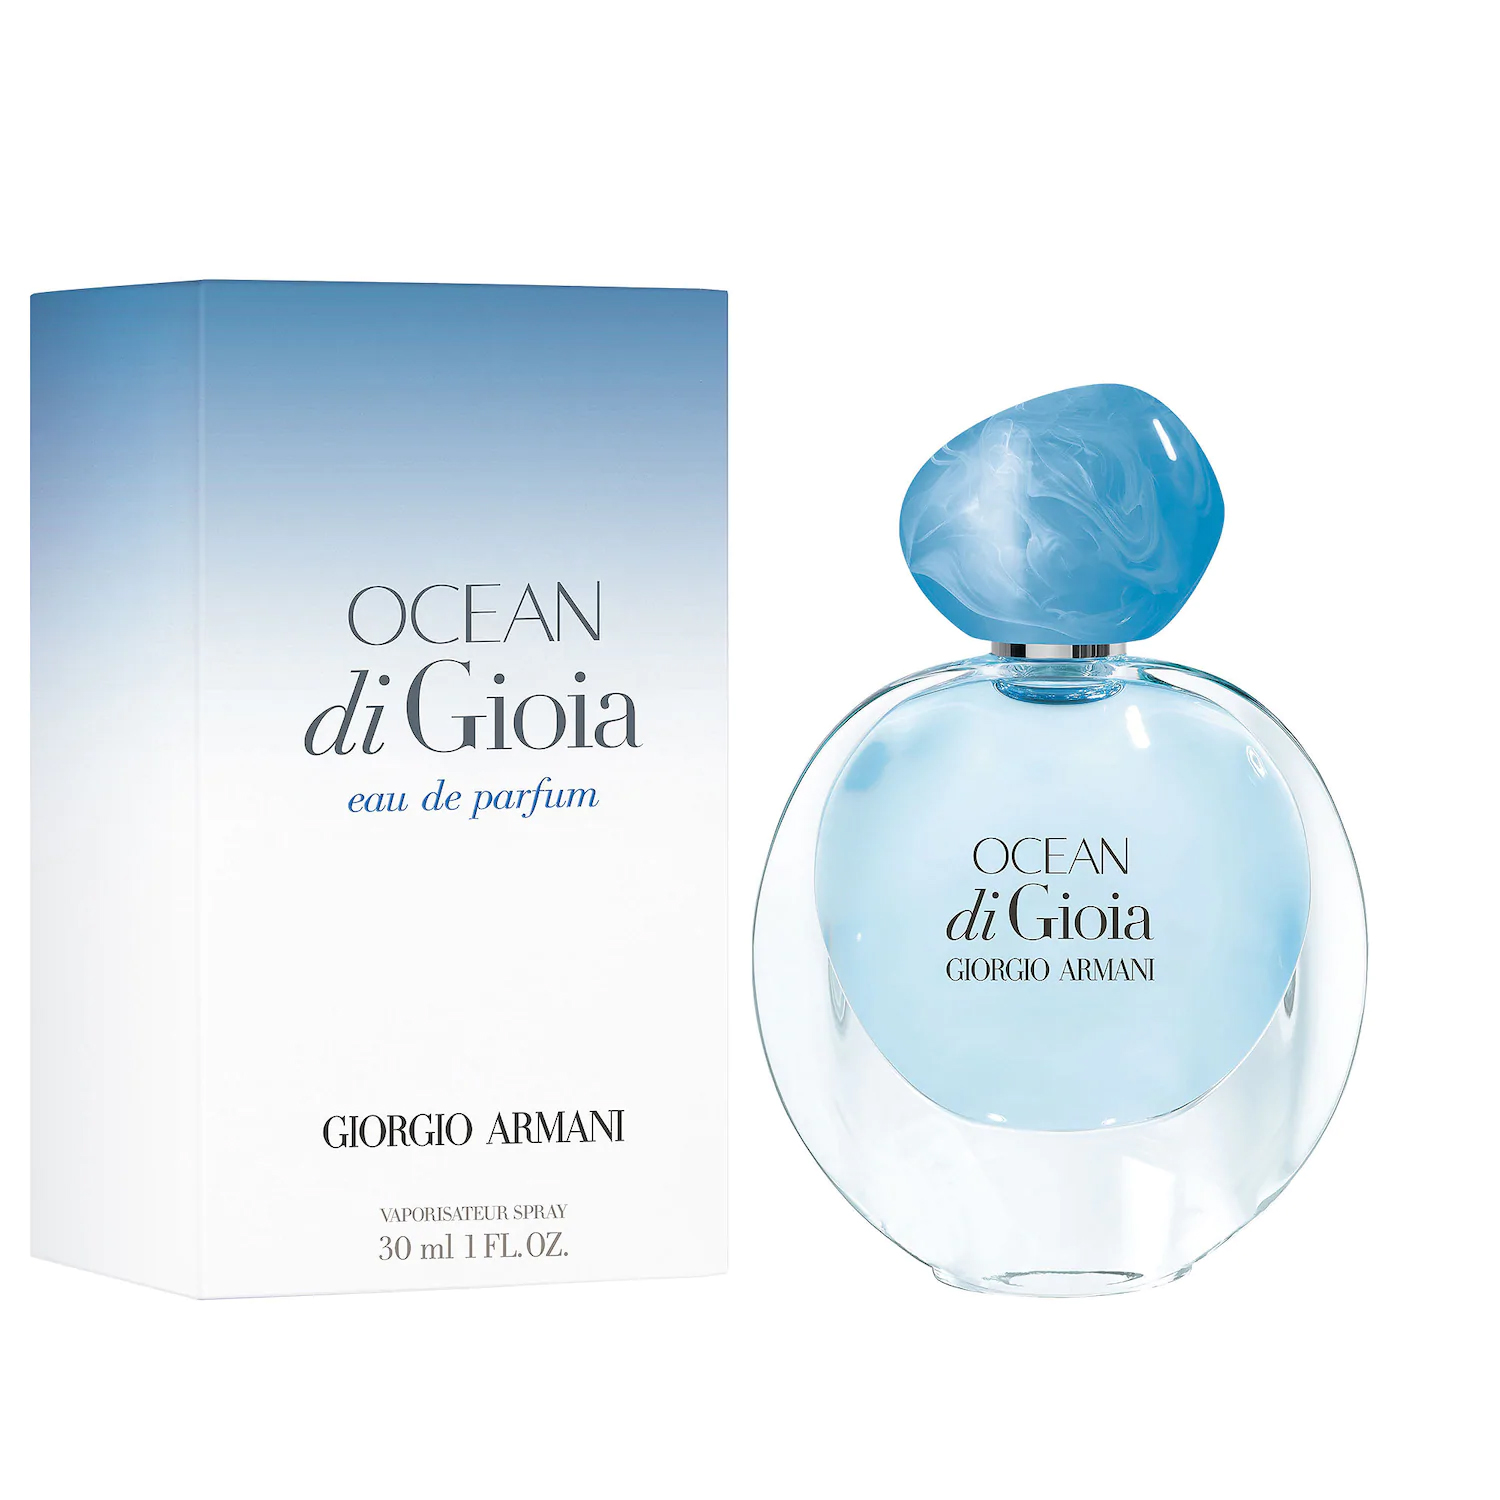 Ocean di Gioia Armani parfum un nouveau parfum